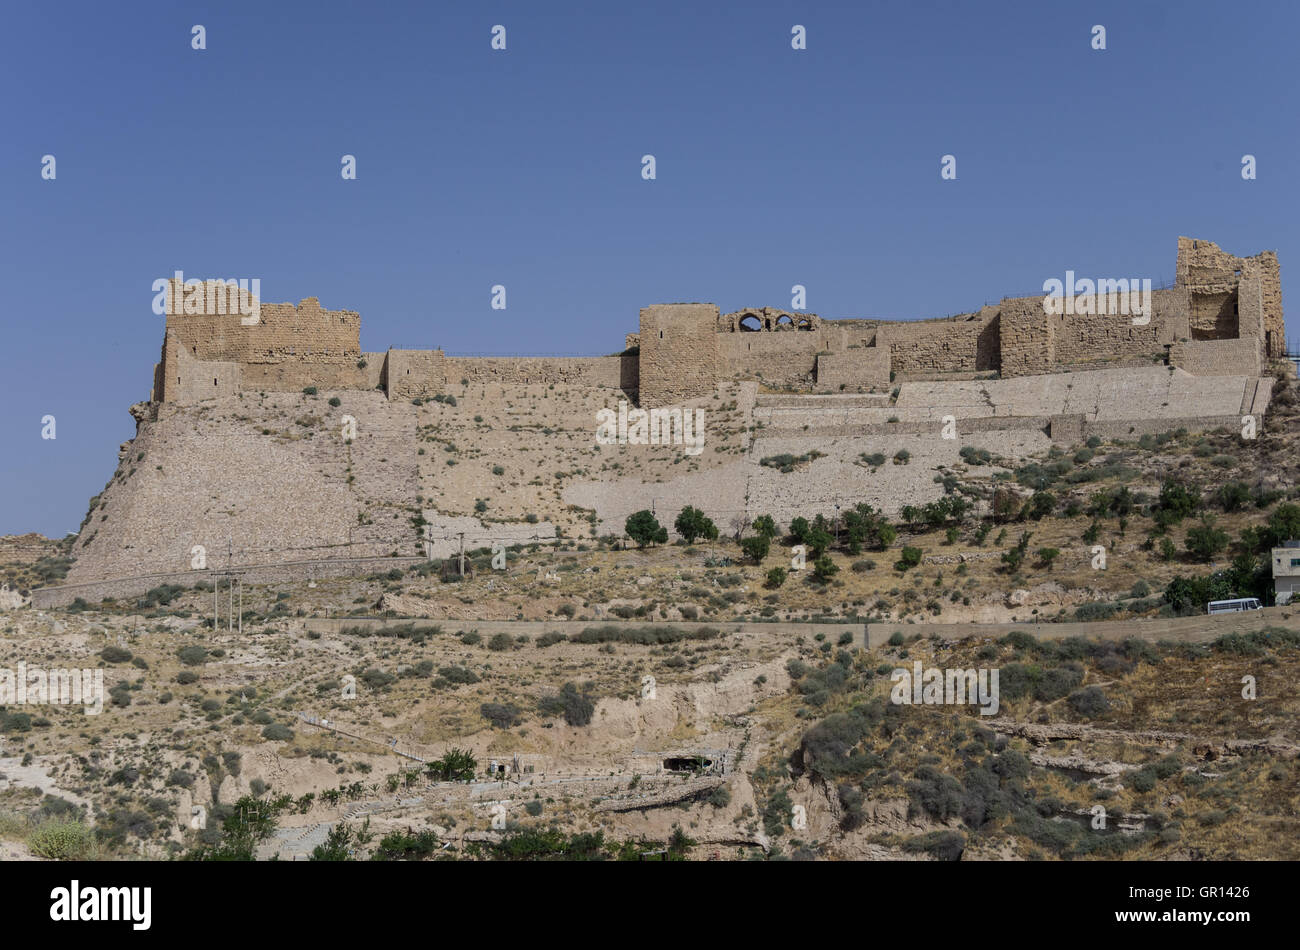 View to the crusader castle Kerak (Al karak) in Jordan Stock Photo